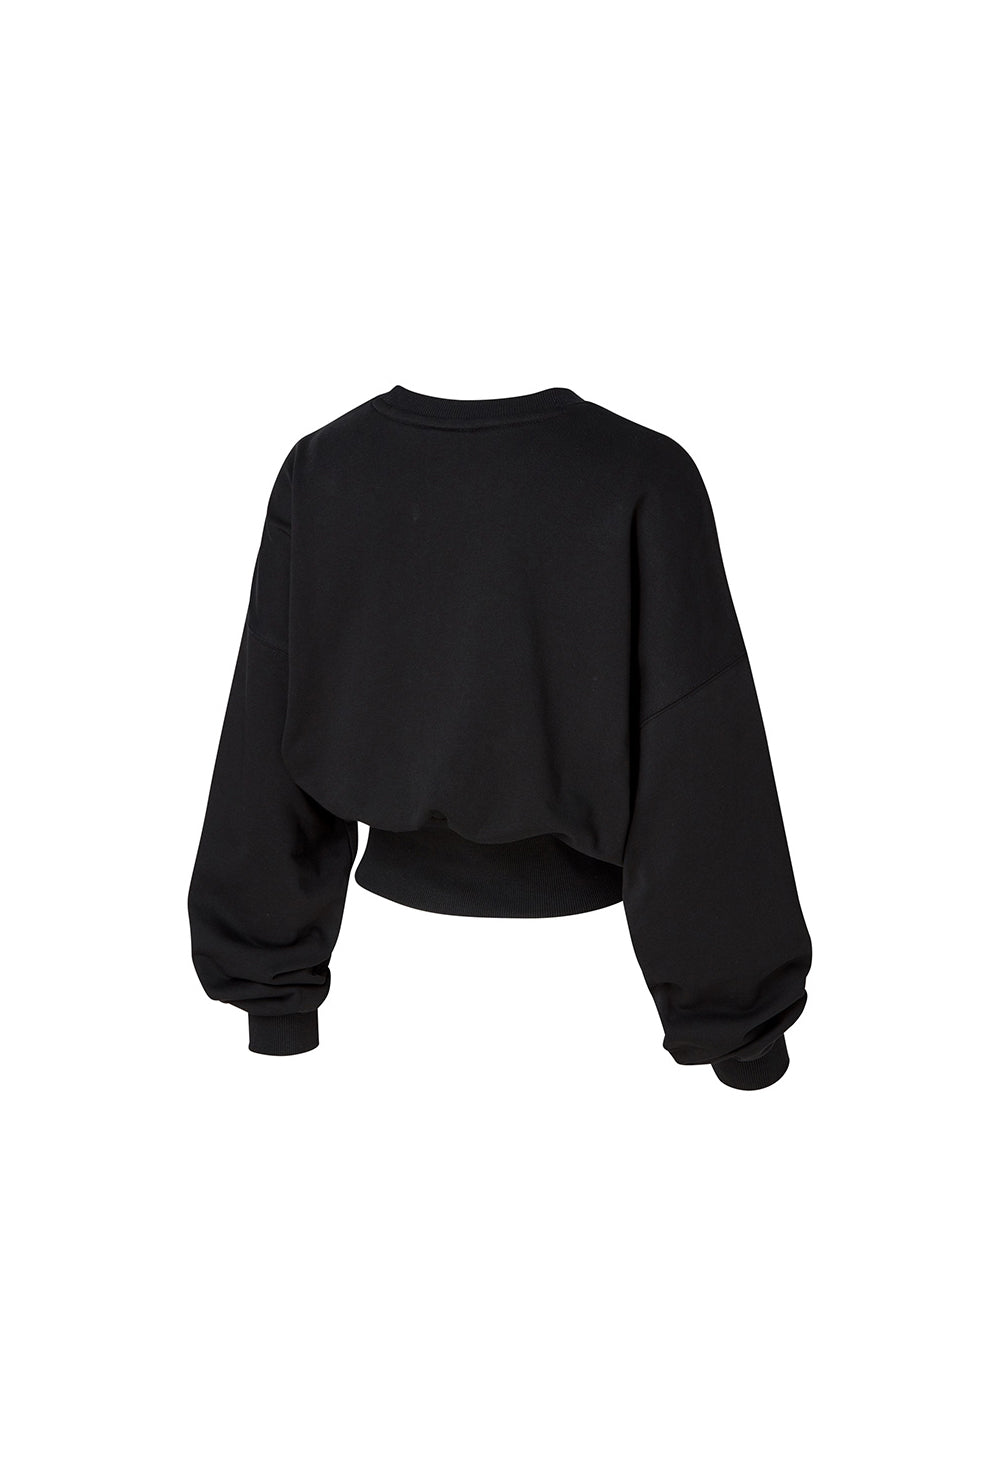 Wide Banding Crop Sweatshirt - Black